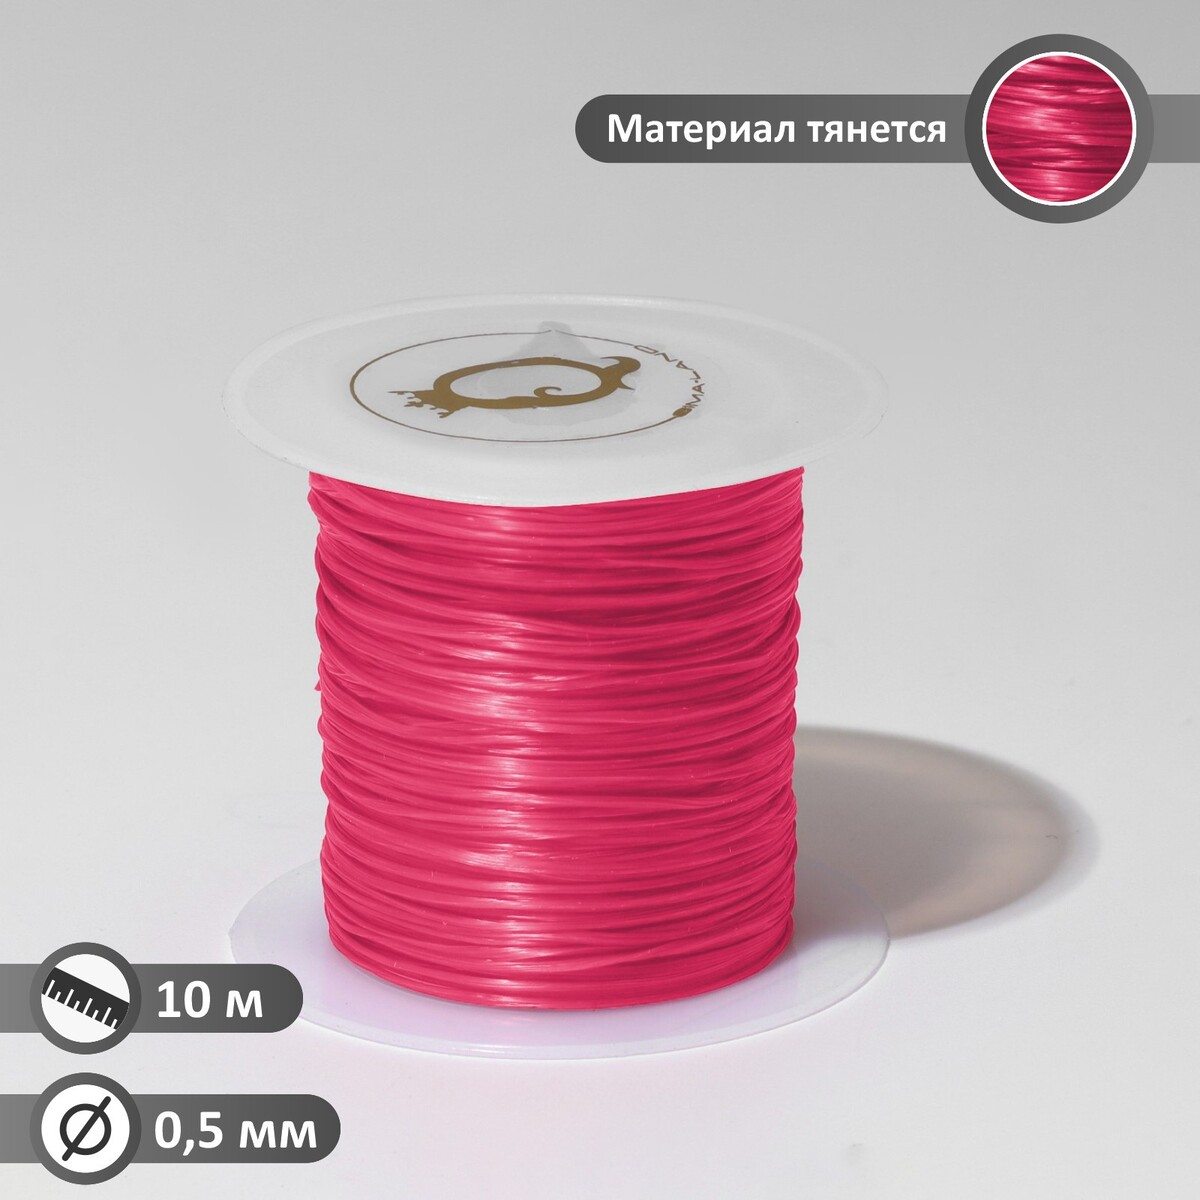 Нить силиконовая (резинка) d=0,5 мм, l=10 м (прочность 2250 денье), цвет розовый нить силиконовая резинка d 0 5мм l 400м прочность 2500 денье